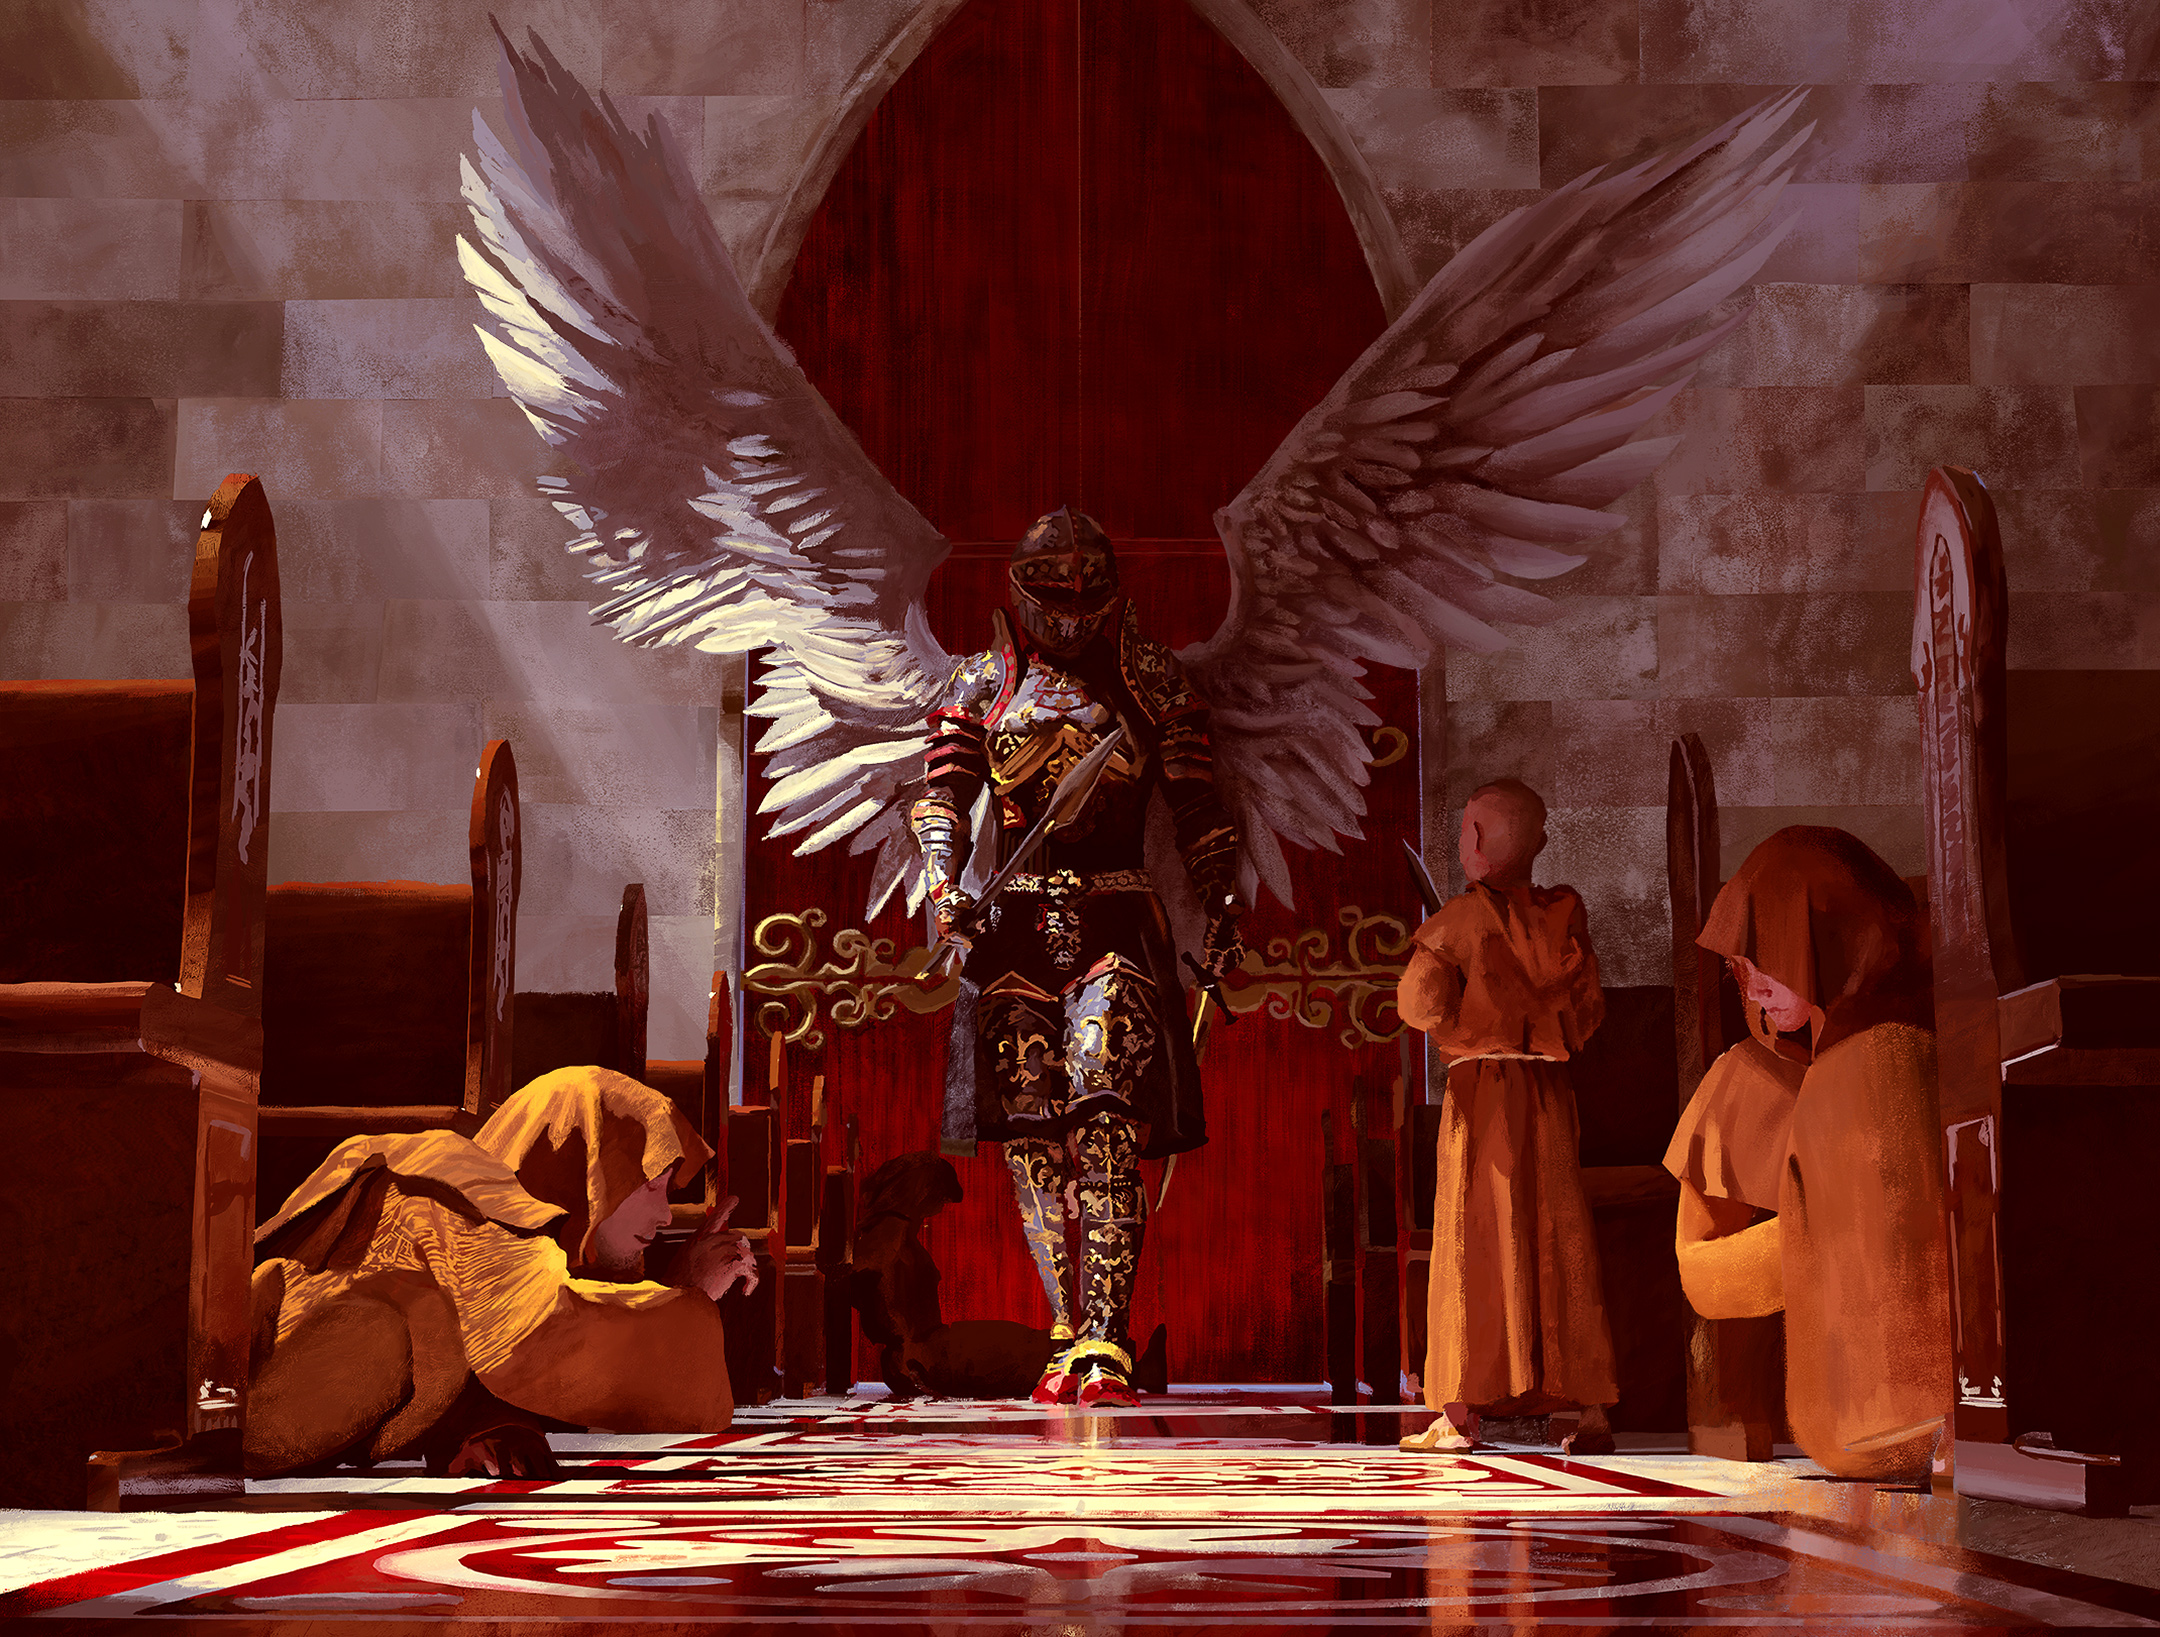 Archangel Michael killing monks in a church.